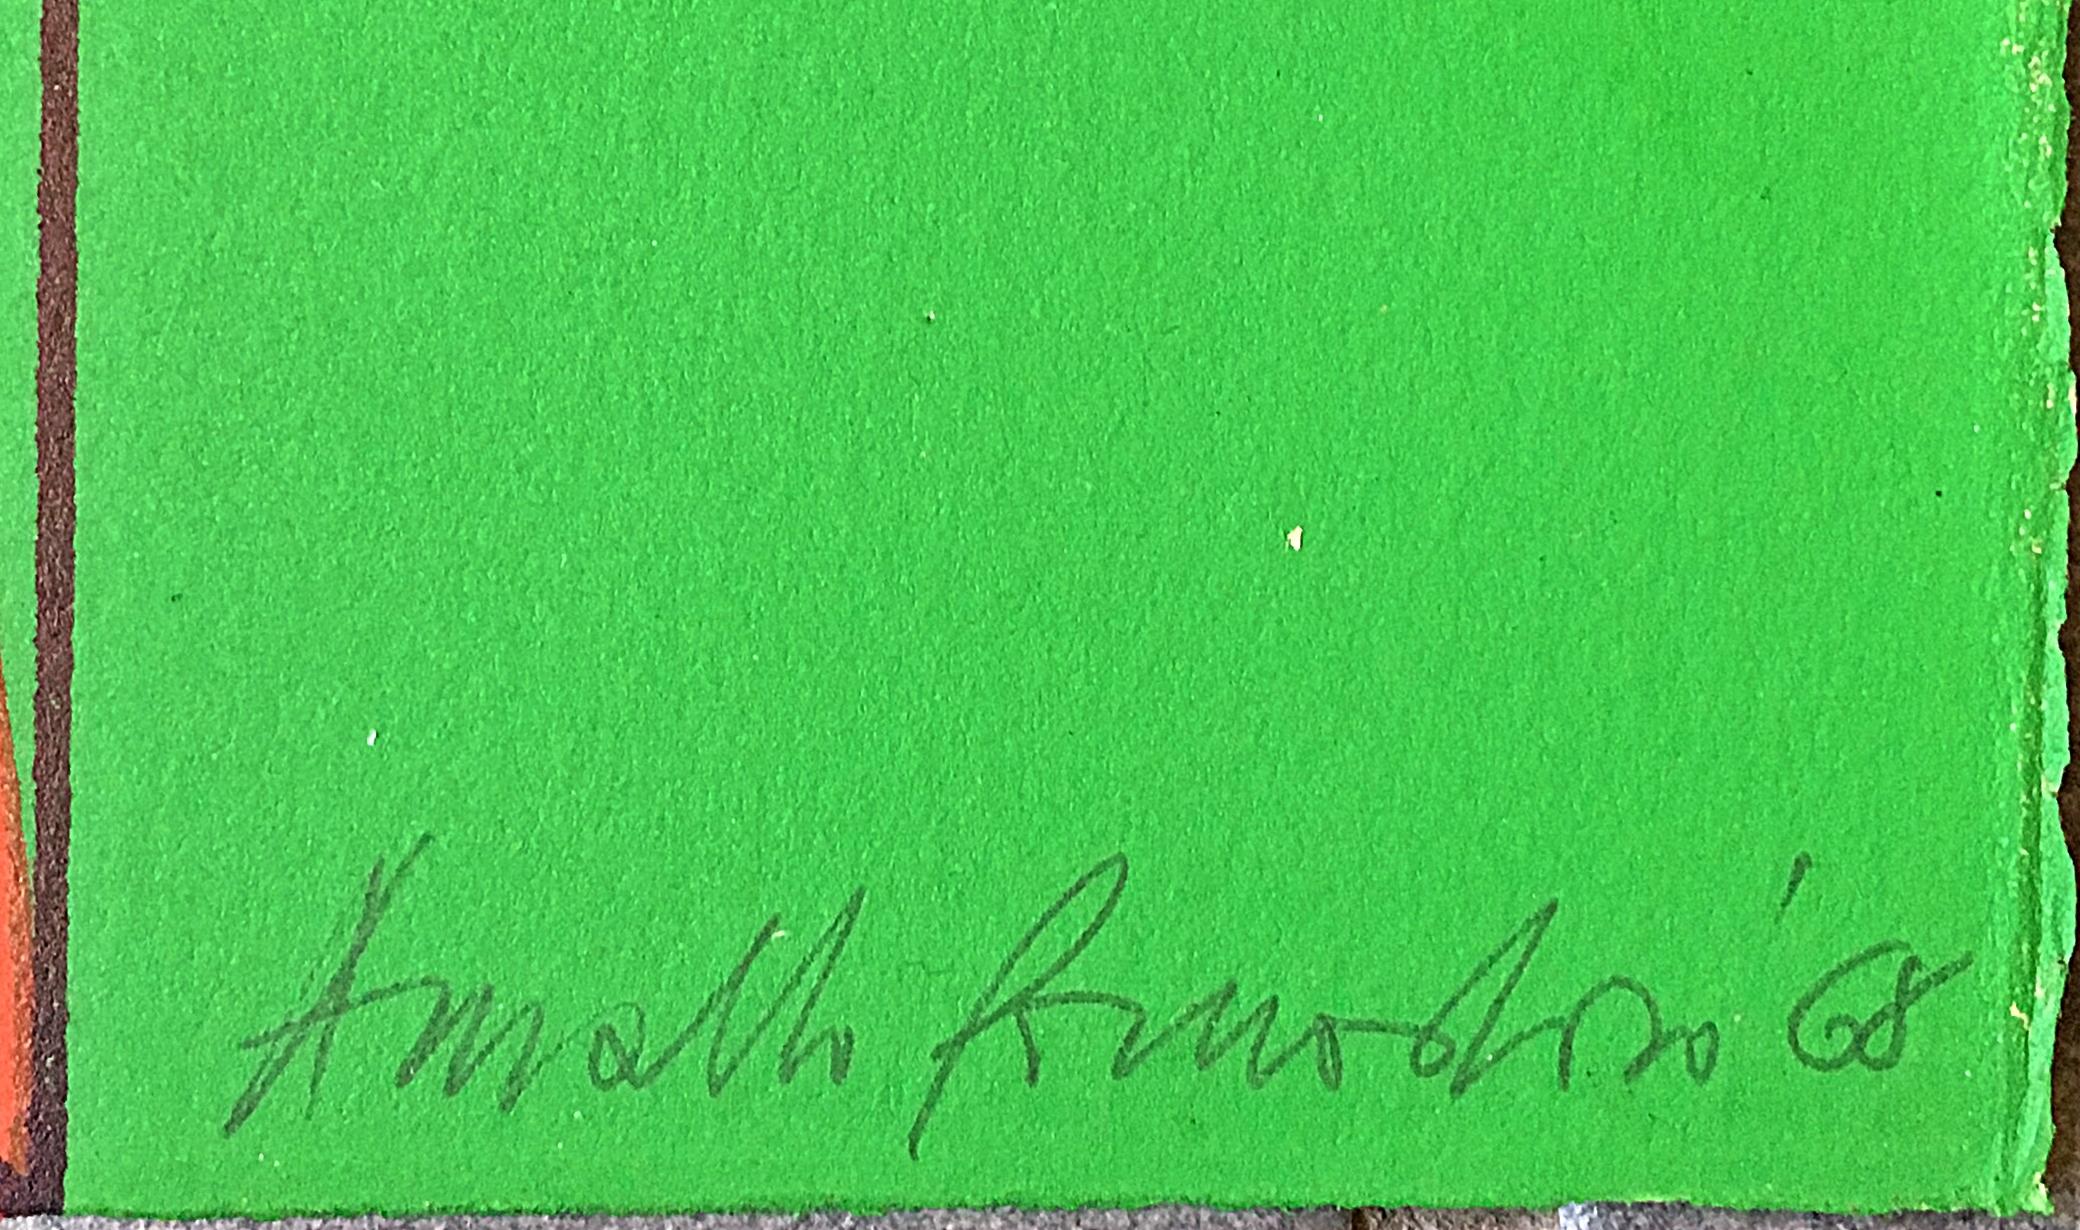 Arnaldo Pomodoro
Abstraction géométrique sans titre du milieu du siècle, 1968
Sérigraphie avec couleurs sur papier chiffon avec bords gaufrés
Signé à la main, numéroté 44 de l'édition de 80 et daté par l'artiste au recto. Estampillé à l'aveugle.
30